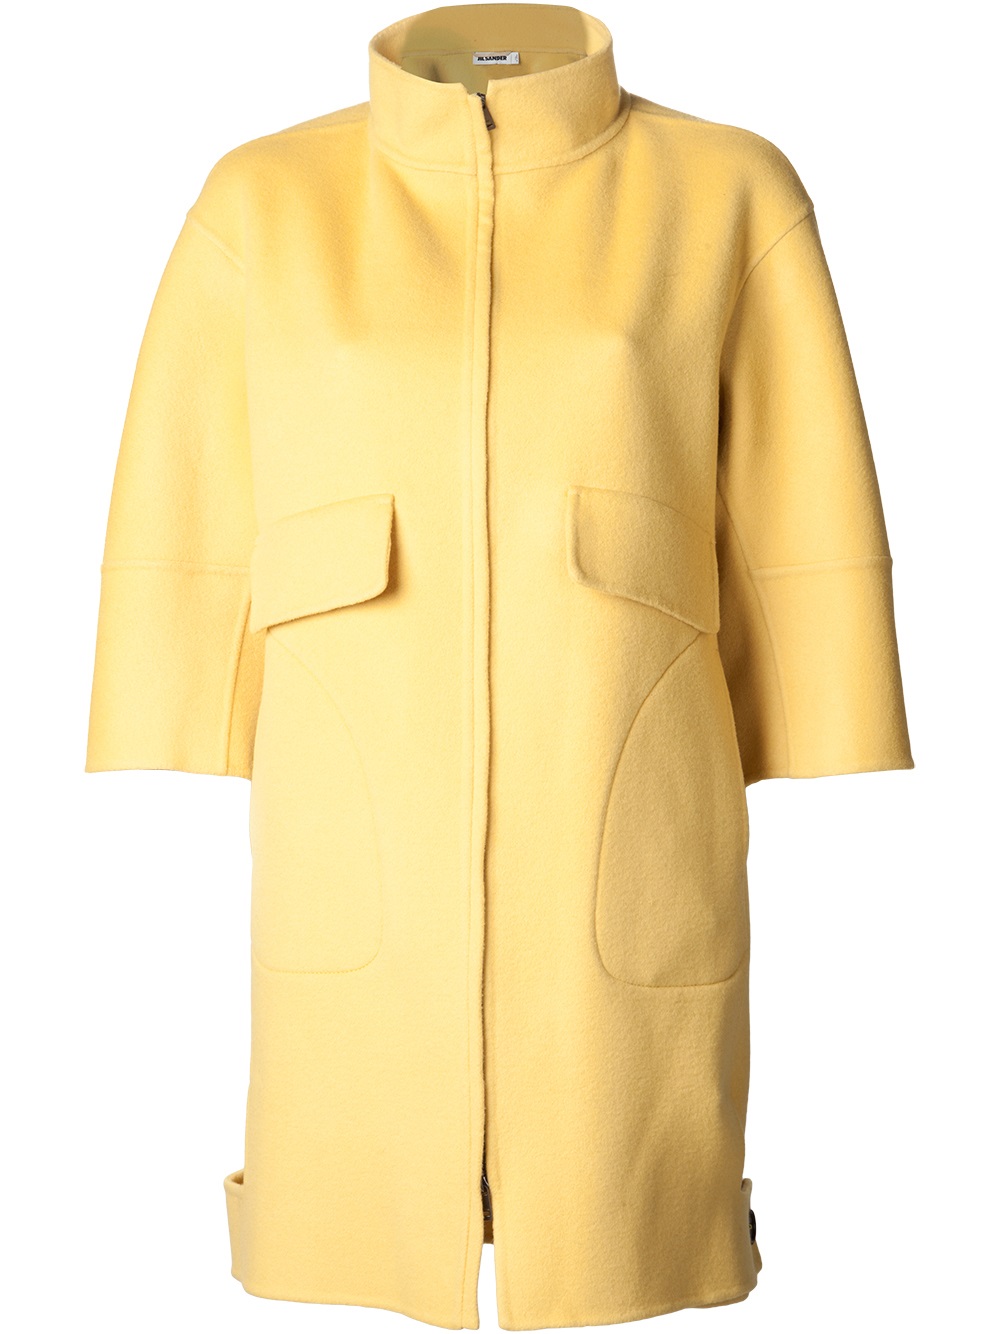 Jil Sander Oversized Coat Dress in Yellow & Orange (Yellow) - Lyst